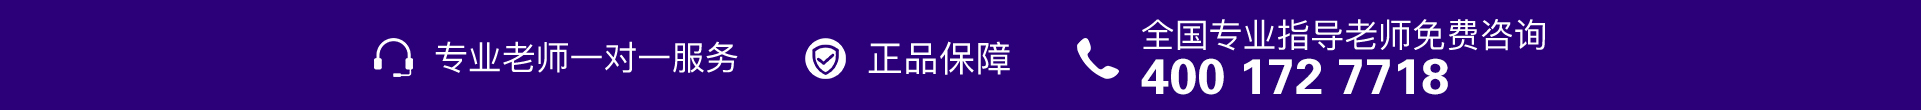 紫色电话-banner图下方-PC.jpg